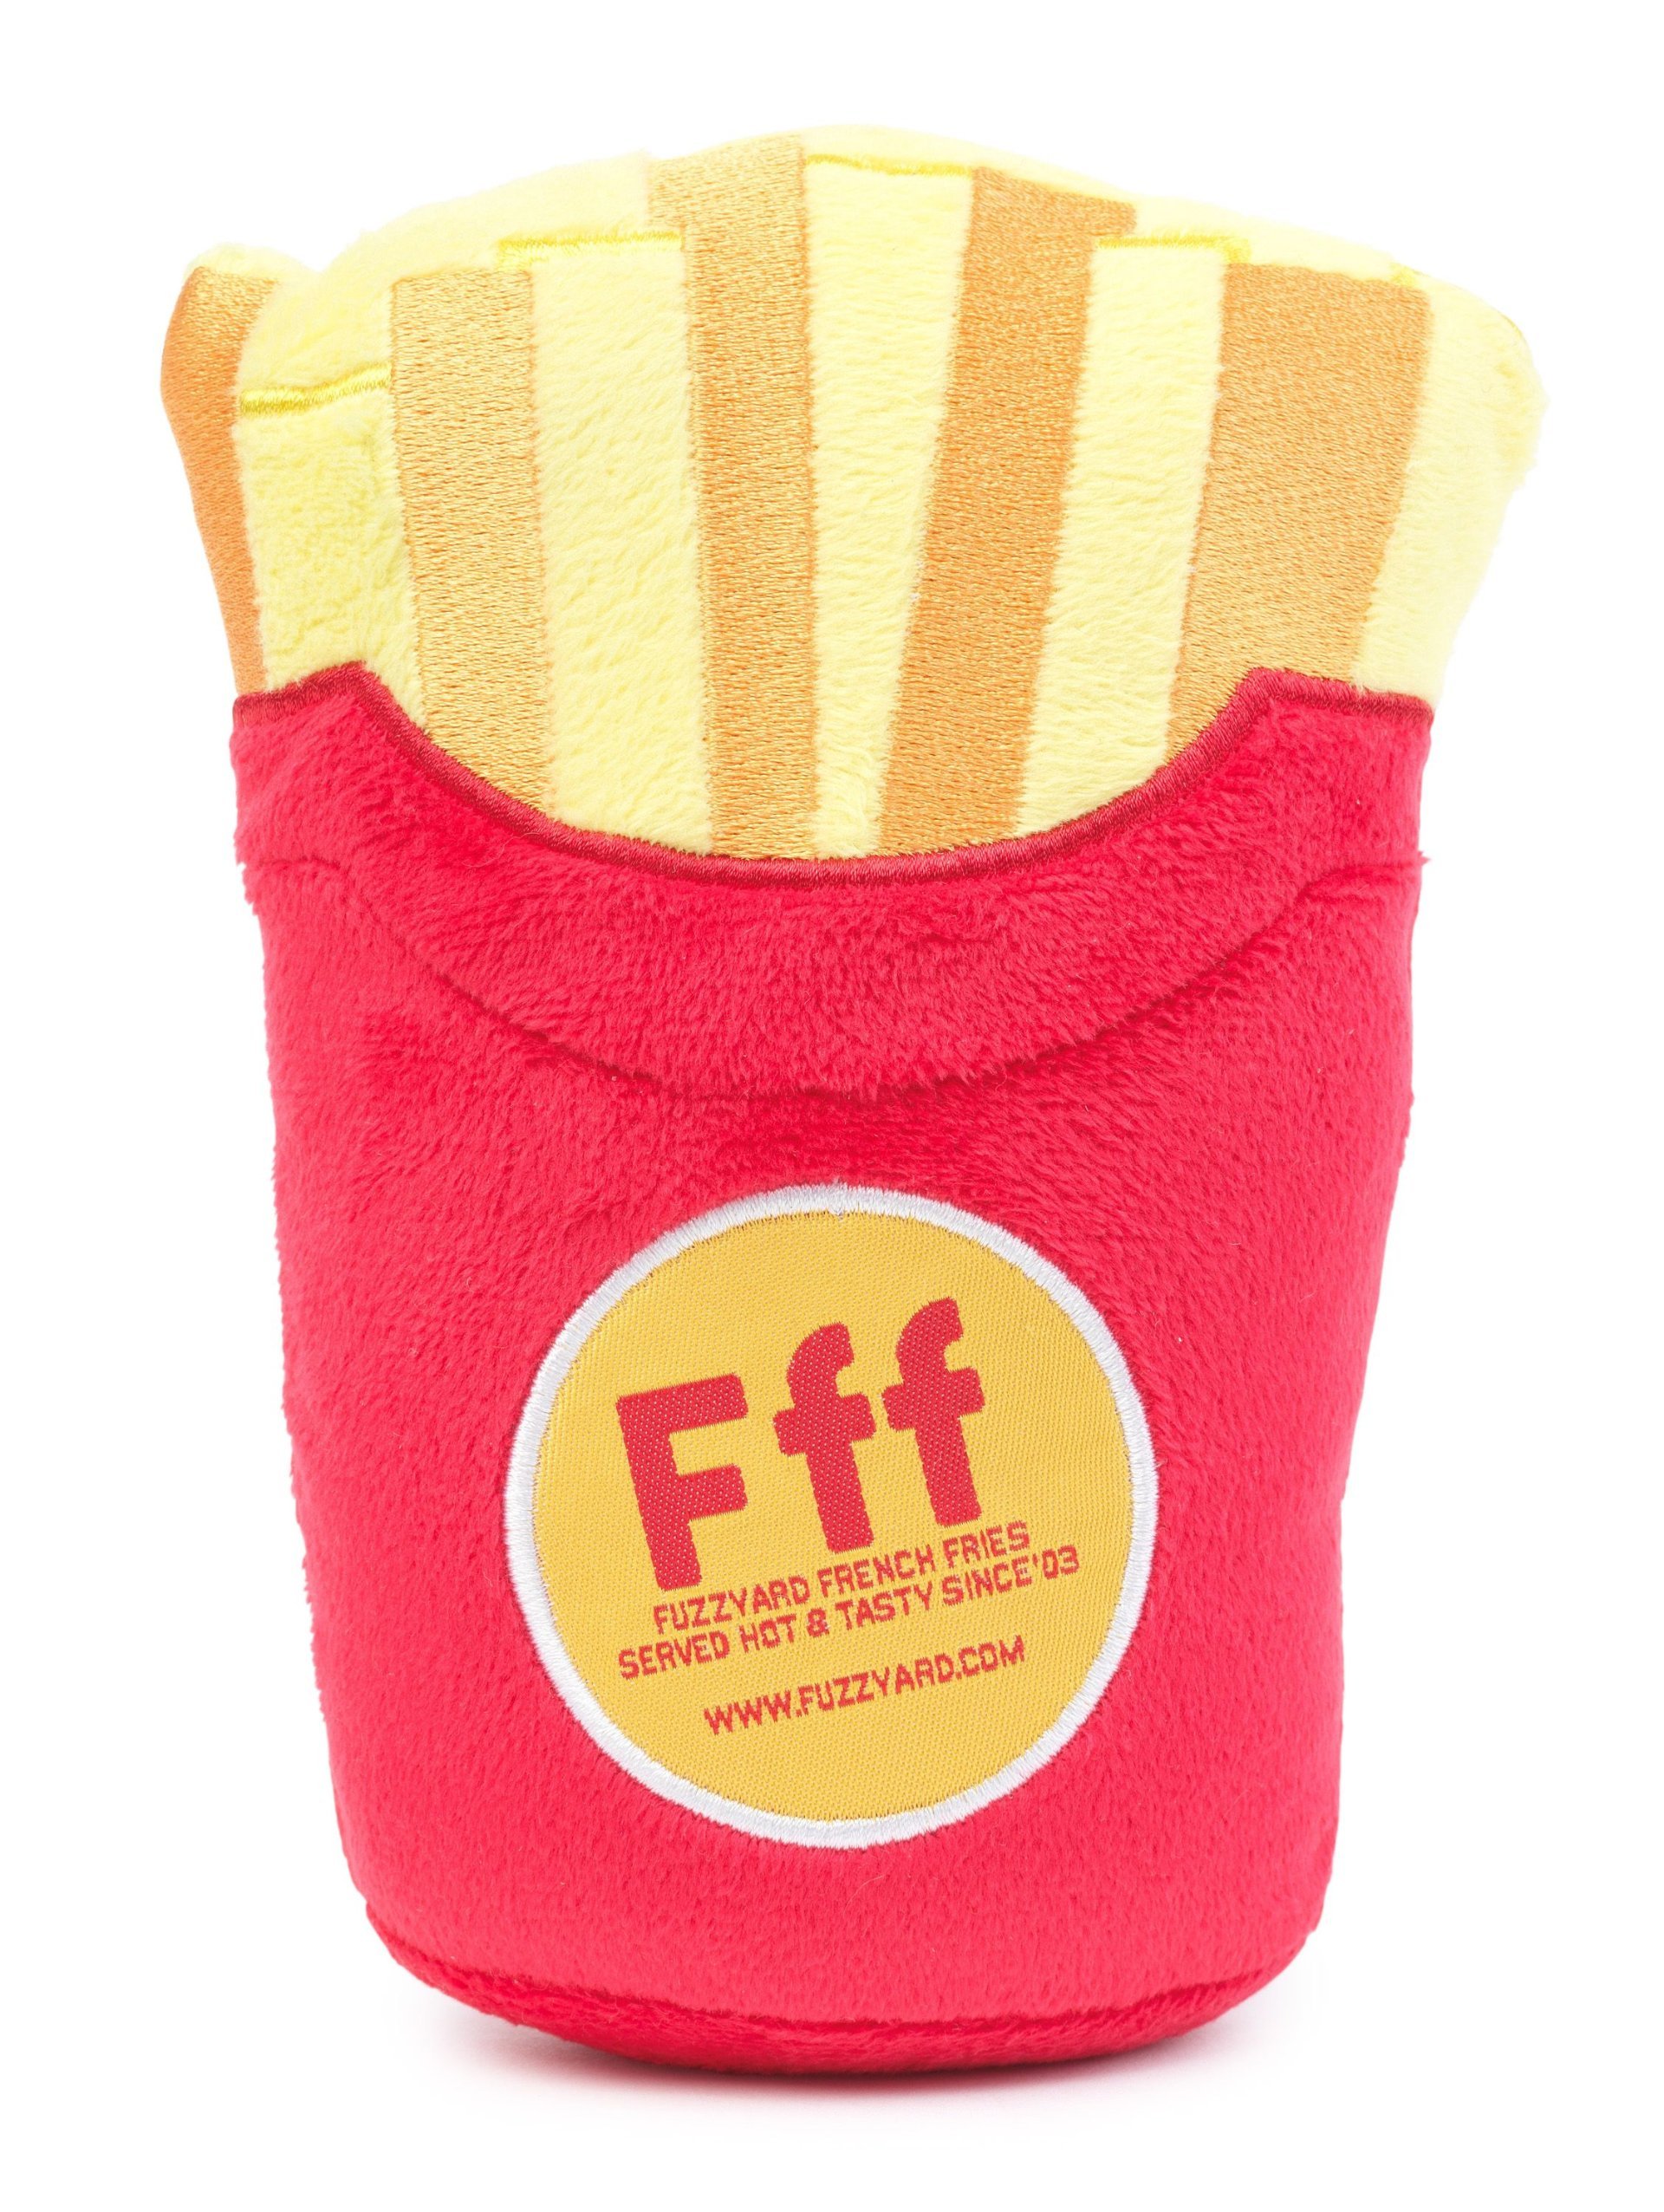 Fuzzyard Fries - Plüschspielzeug für Hunde.